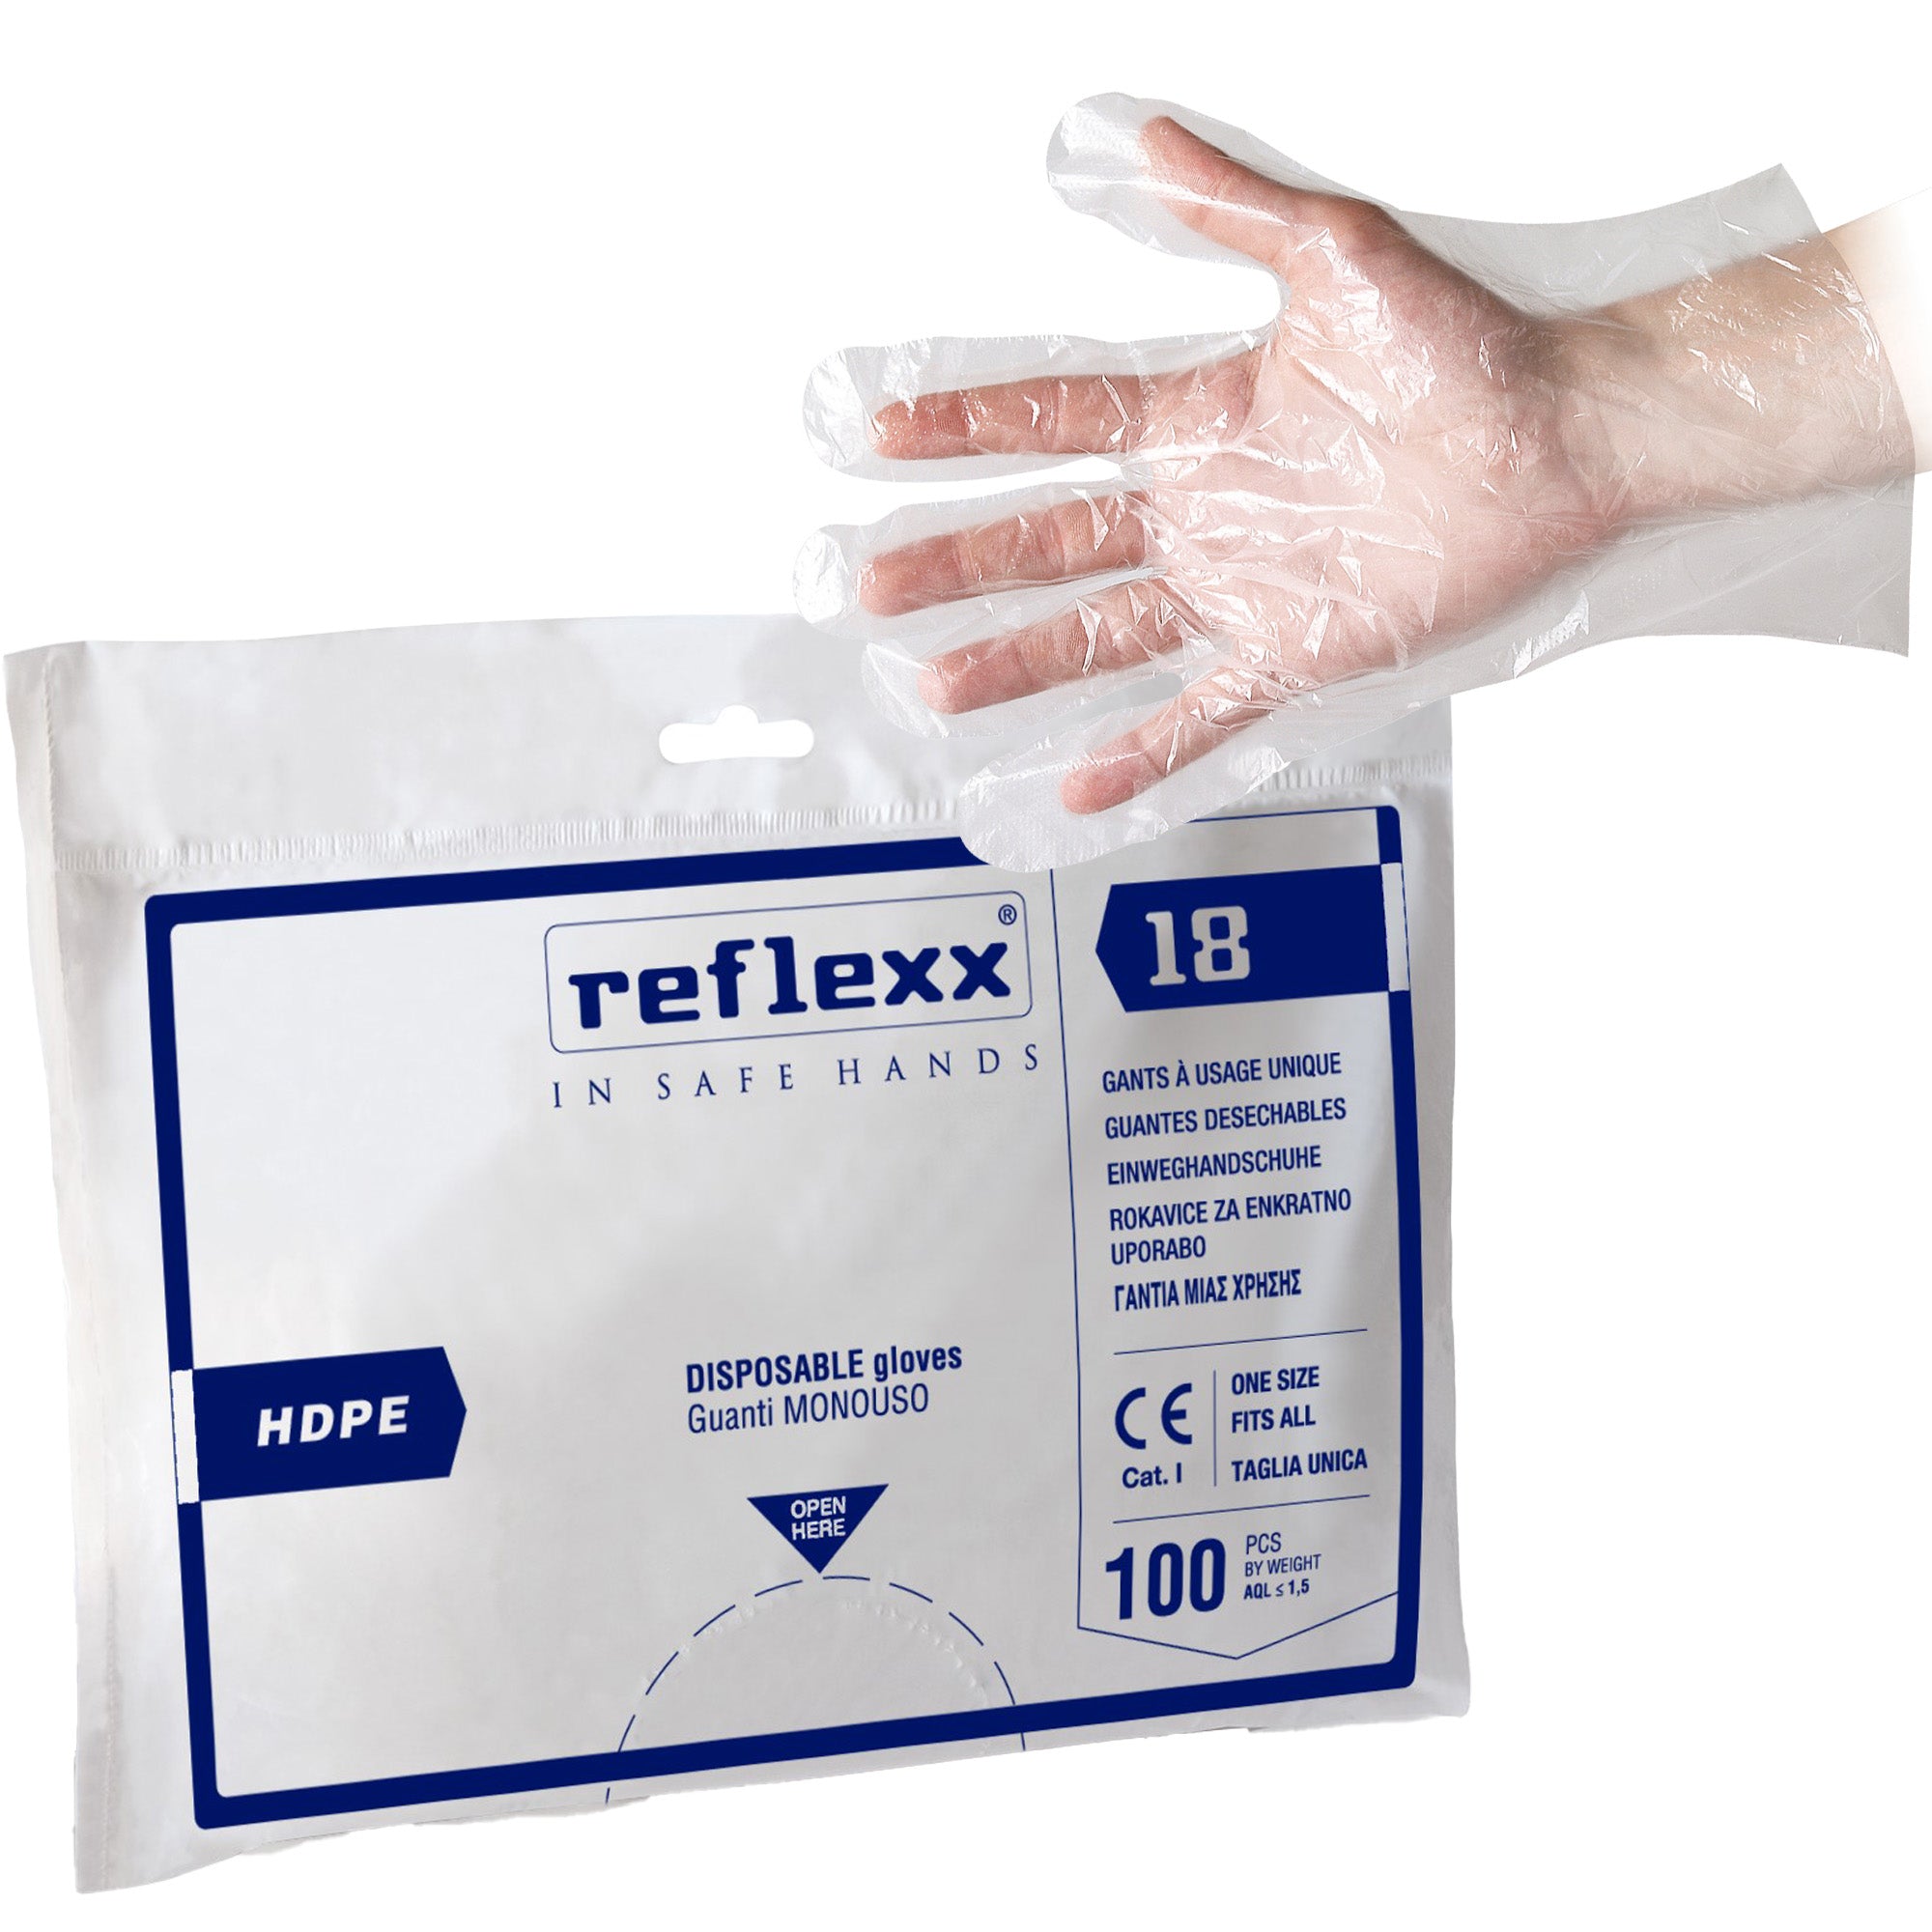 reflexx-conf-100-guanti-hdpe-r18-taglia-unica-trasparente